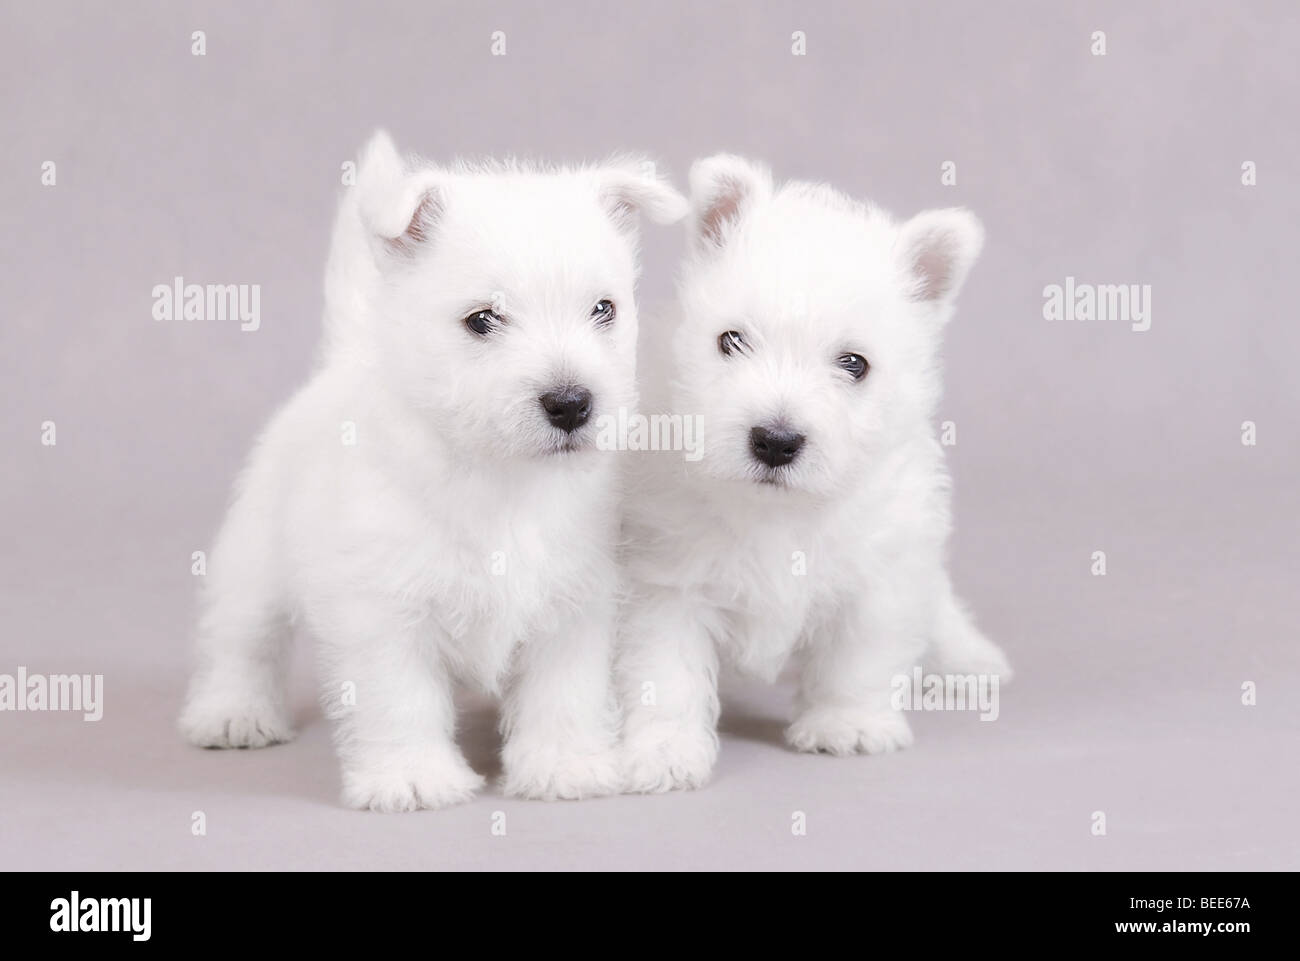 Deux West Highland White Terrier chiots portrait sur fond gris Banque D'Images